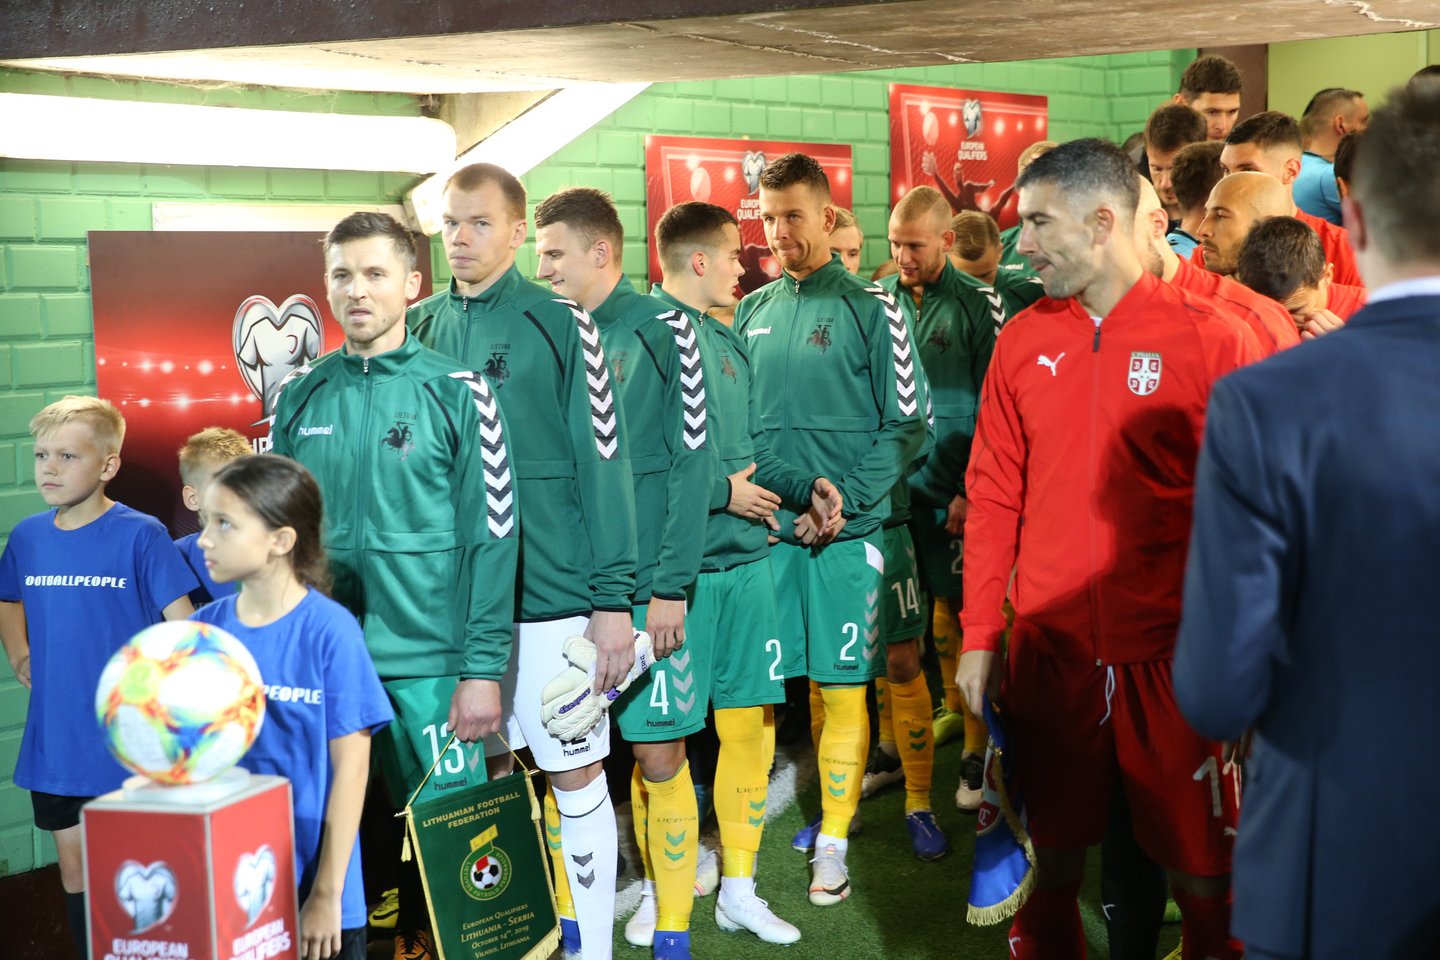  Lietuvos ir Serbijos futbolo rinktinių dvikovos momentai<br> R.Danisevičiaus nuotr.